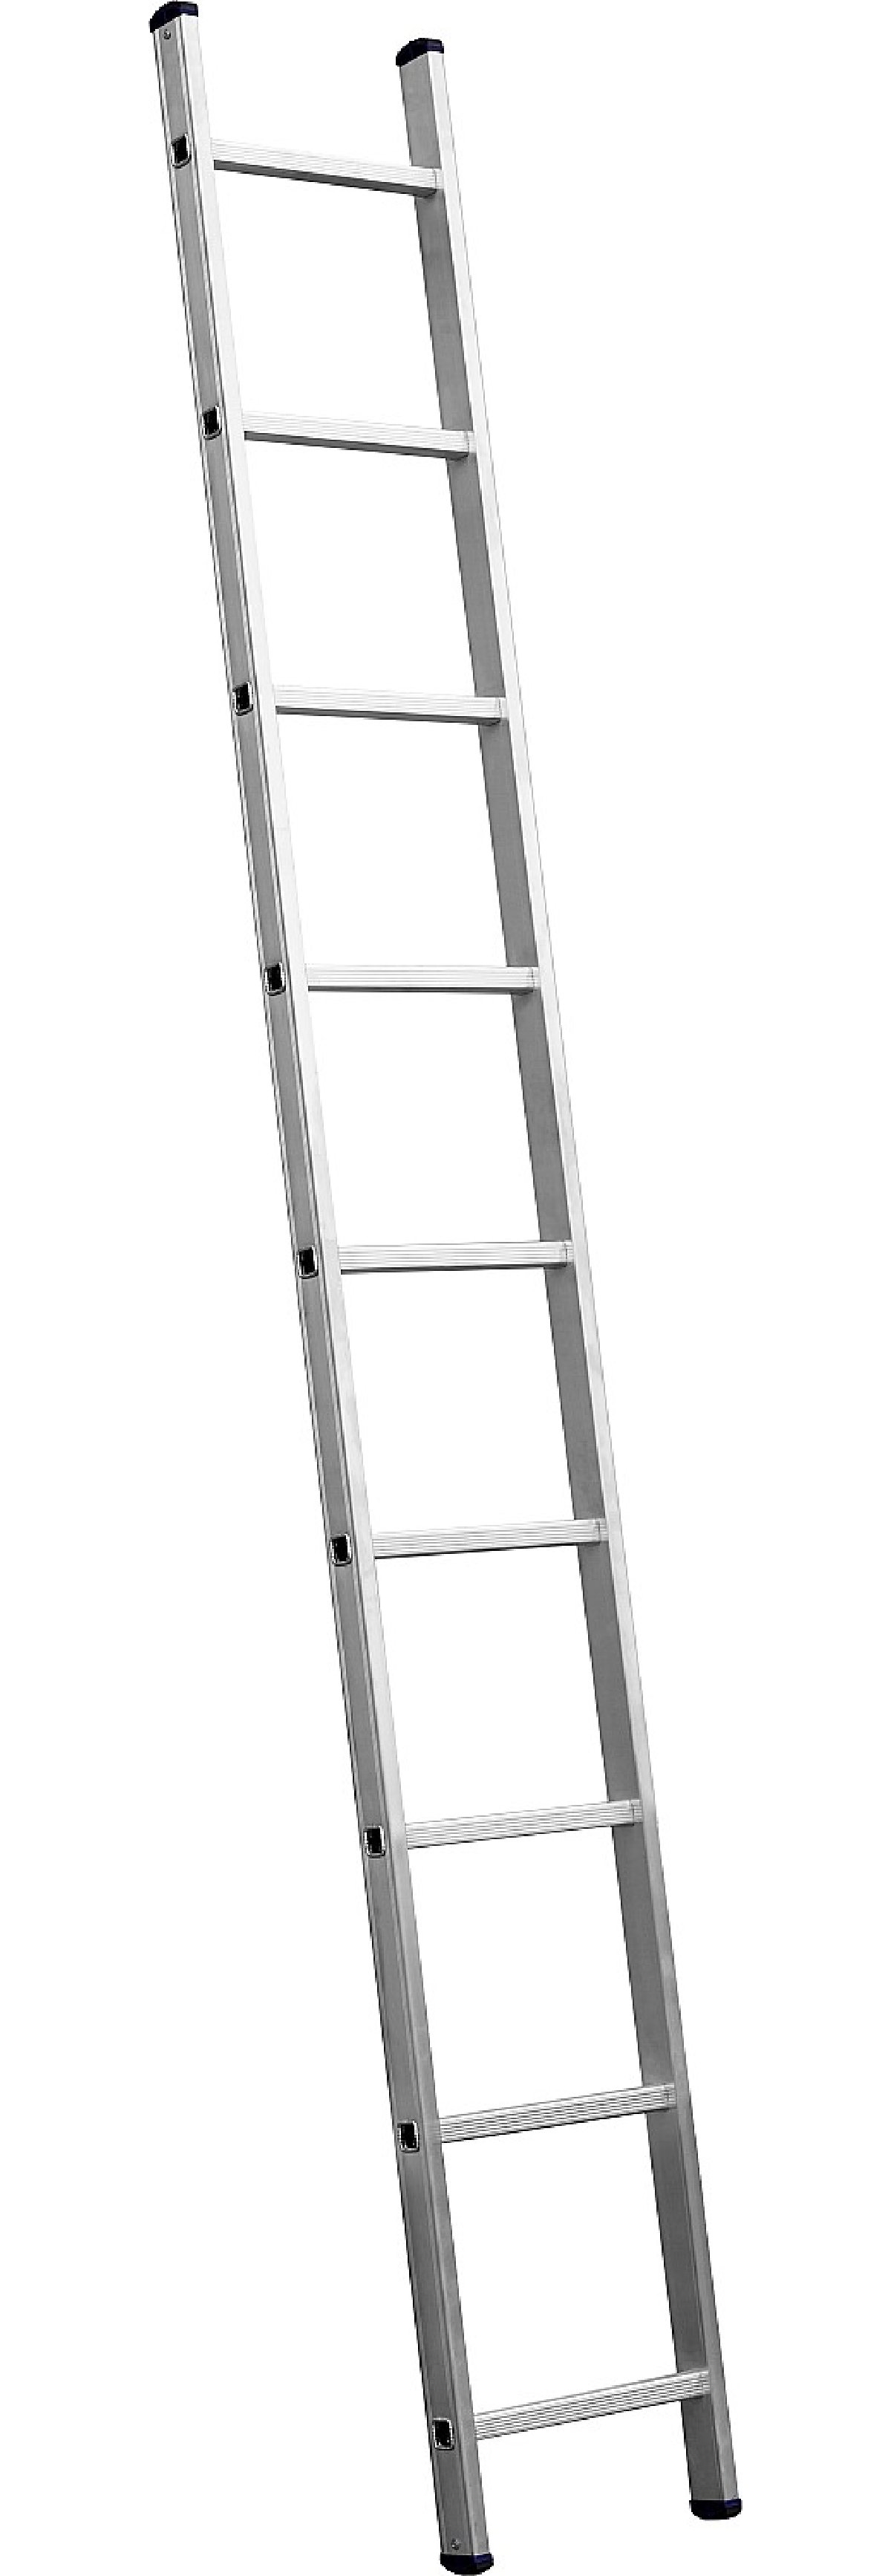 Приставная лестница СИБИН, односекционная, алюминиевая, 9 ступеней, высота 251 см, (38834-09)Купить